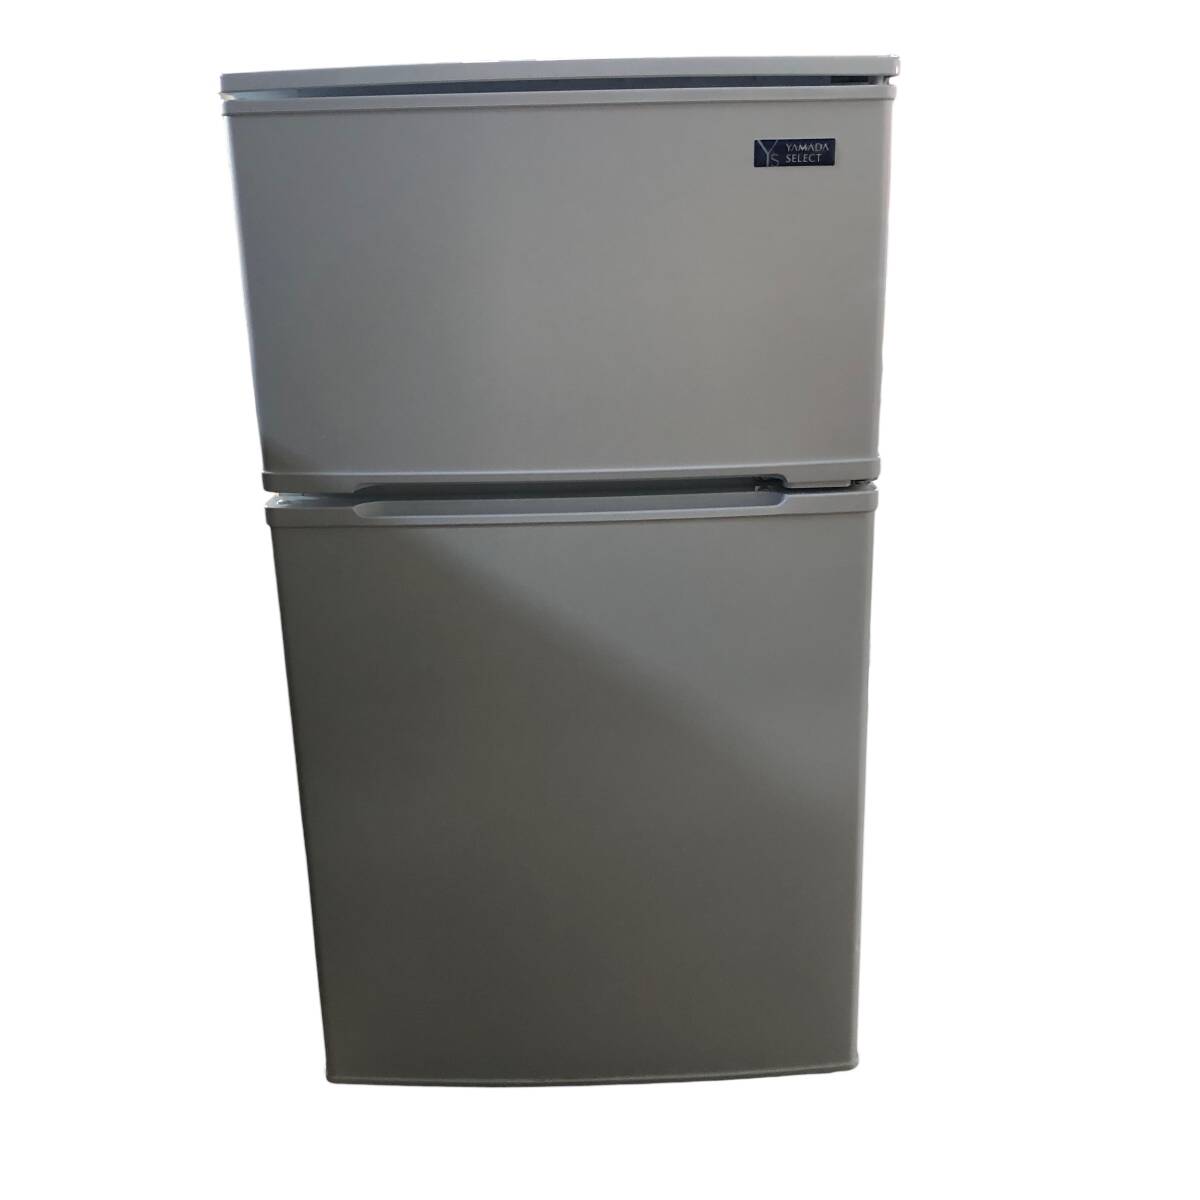 R303 YAMADA ヤマダ ノンフロン冷凍冷蔵庫 2ドア 90L YRZ-C09G1 19年製 直接取引可 石狩市